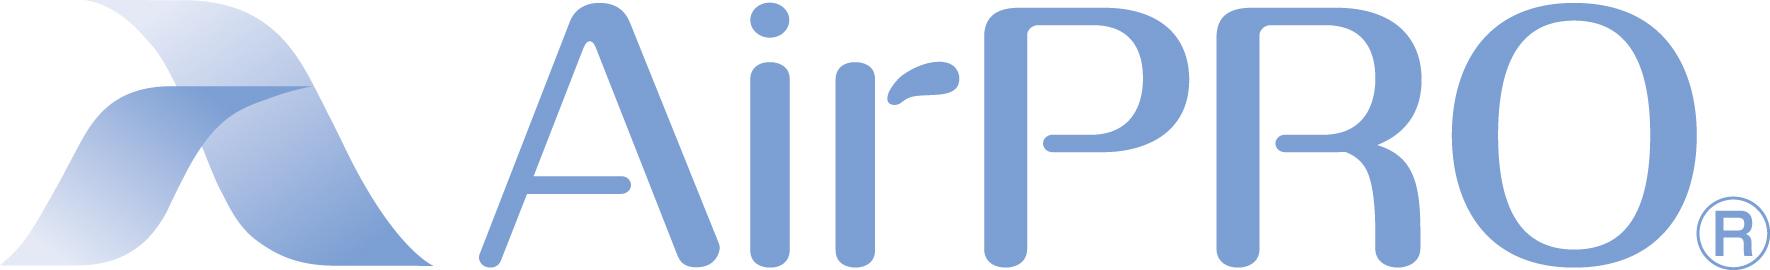 20120820_AirPRO_logo_R